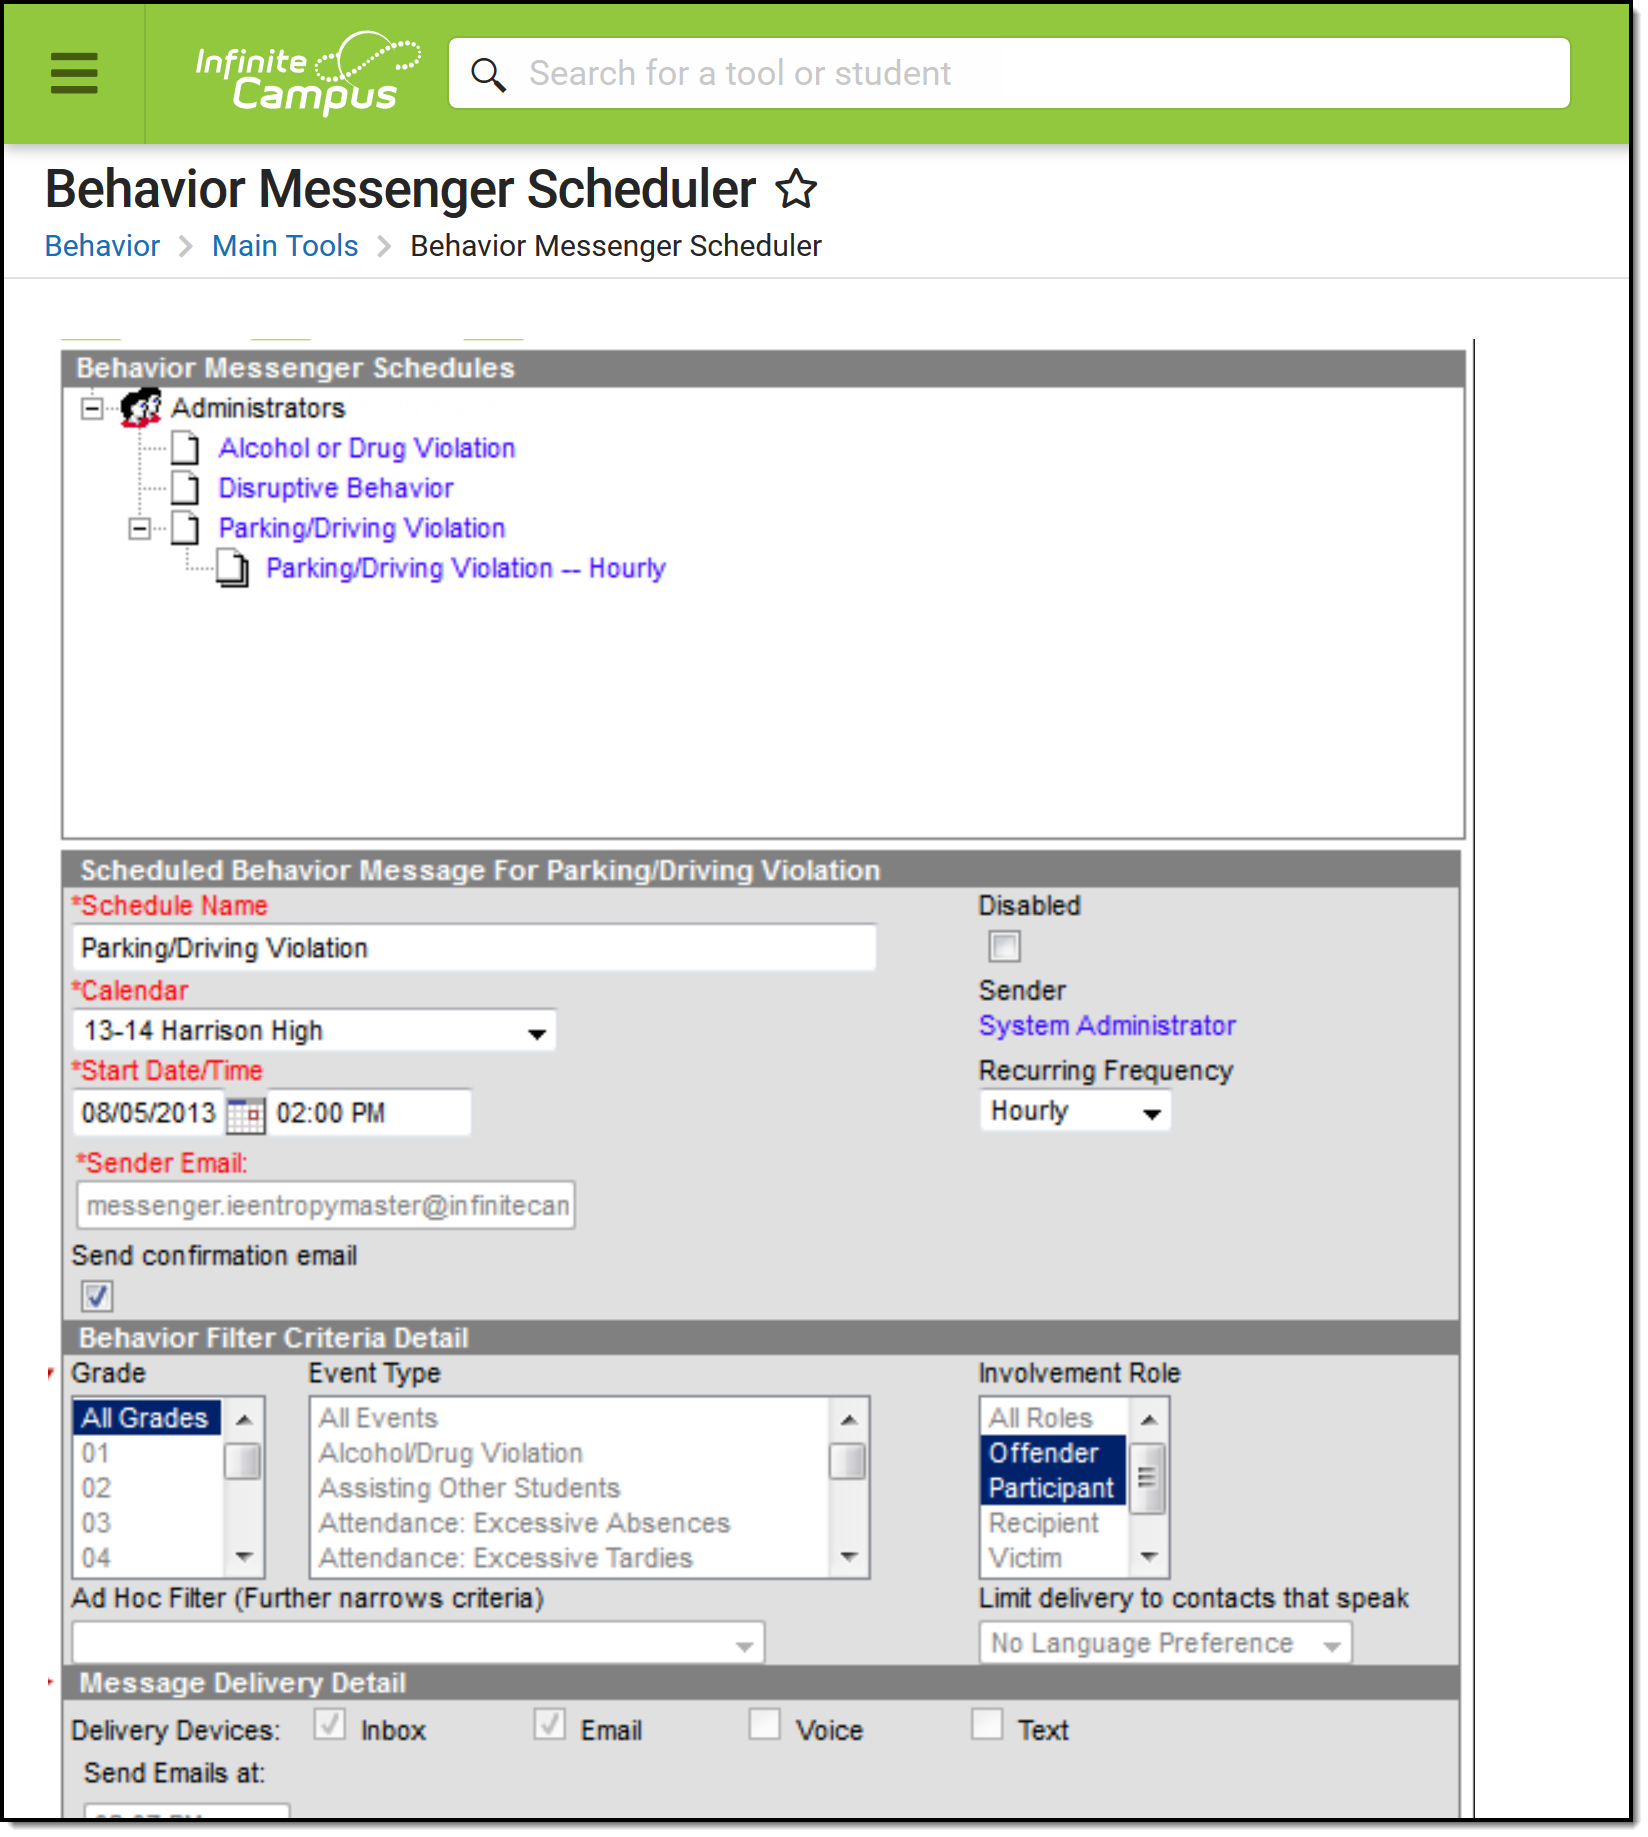 Screenshot of the Behavior Messenger Schedule